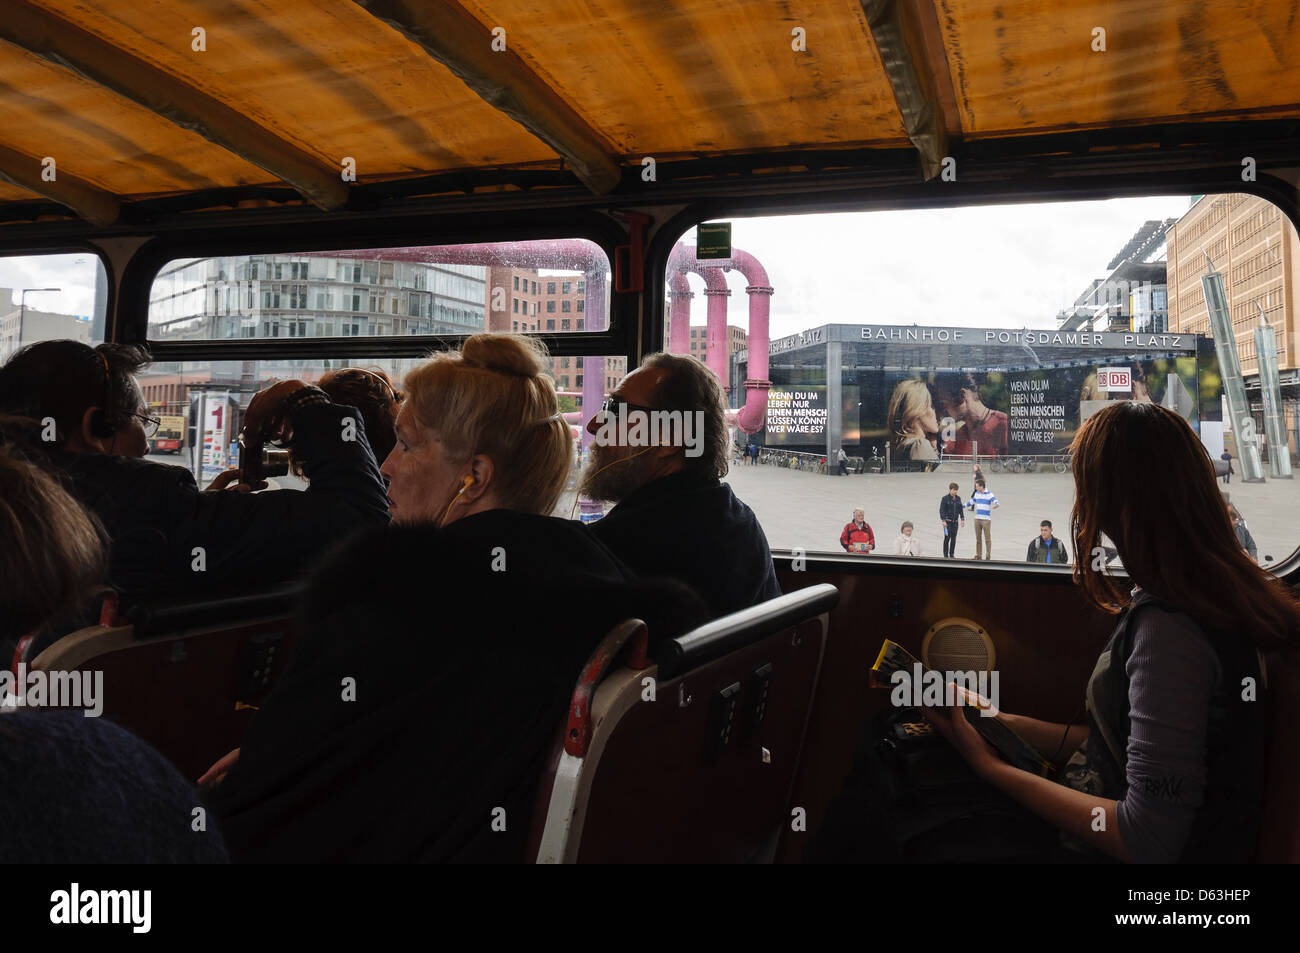 Sightseeing-Bus von innen am Potsdamer Platz, Berlin, Deutschland. Stockfoto